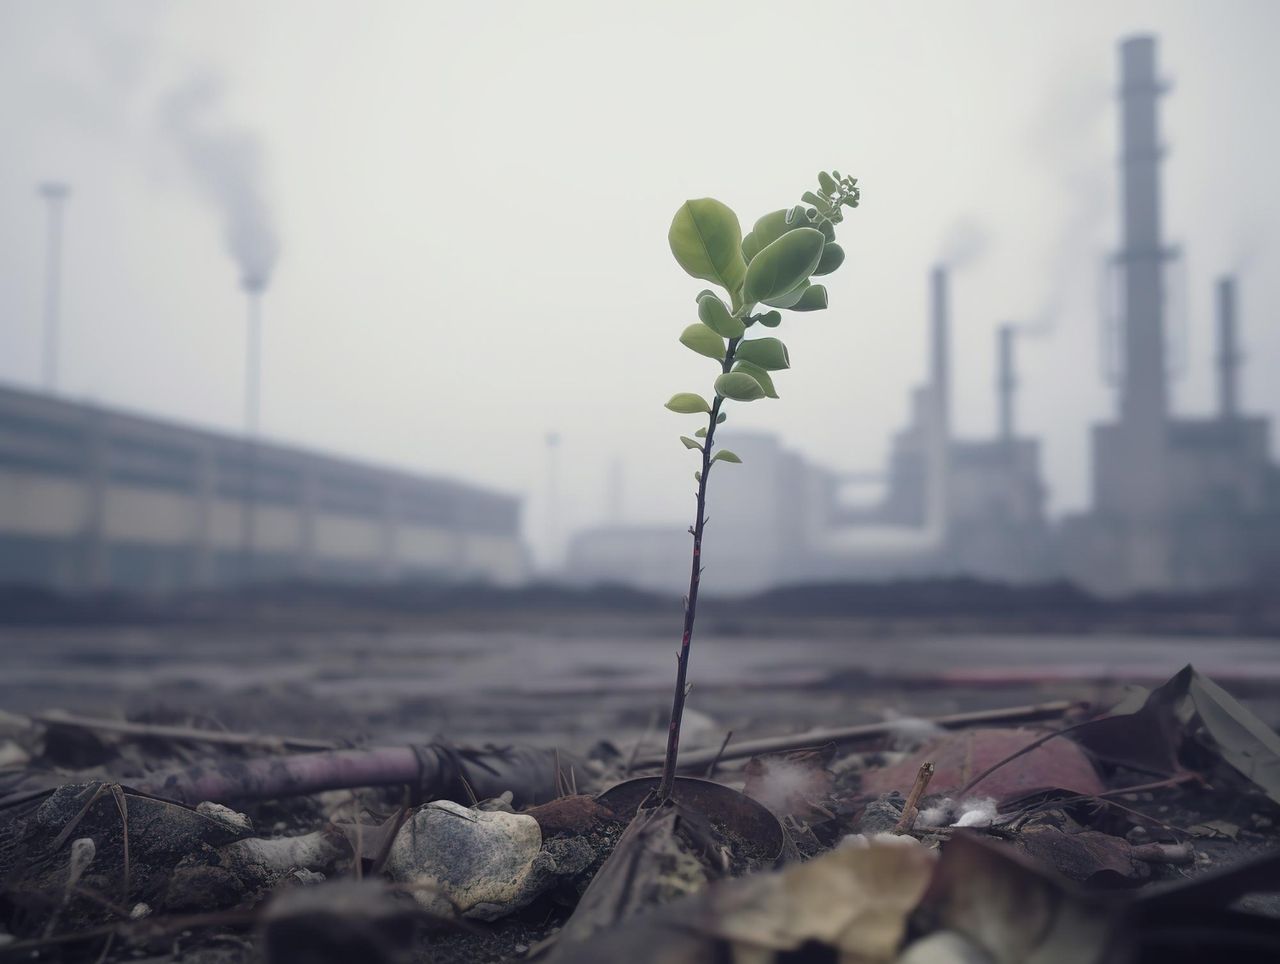 COP28 klímacsúcs: elfogadták a fosszilis tüzelőanyagok kivezetésére vonatkozó zárónyilatkozatot